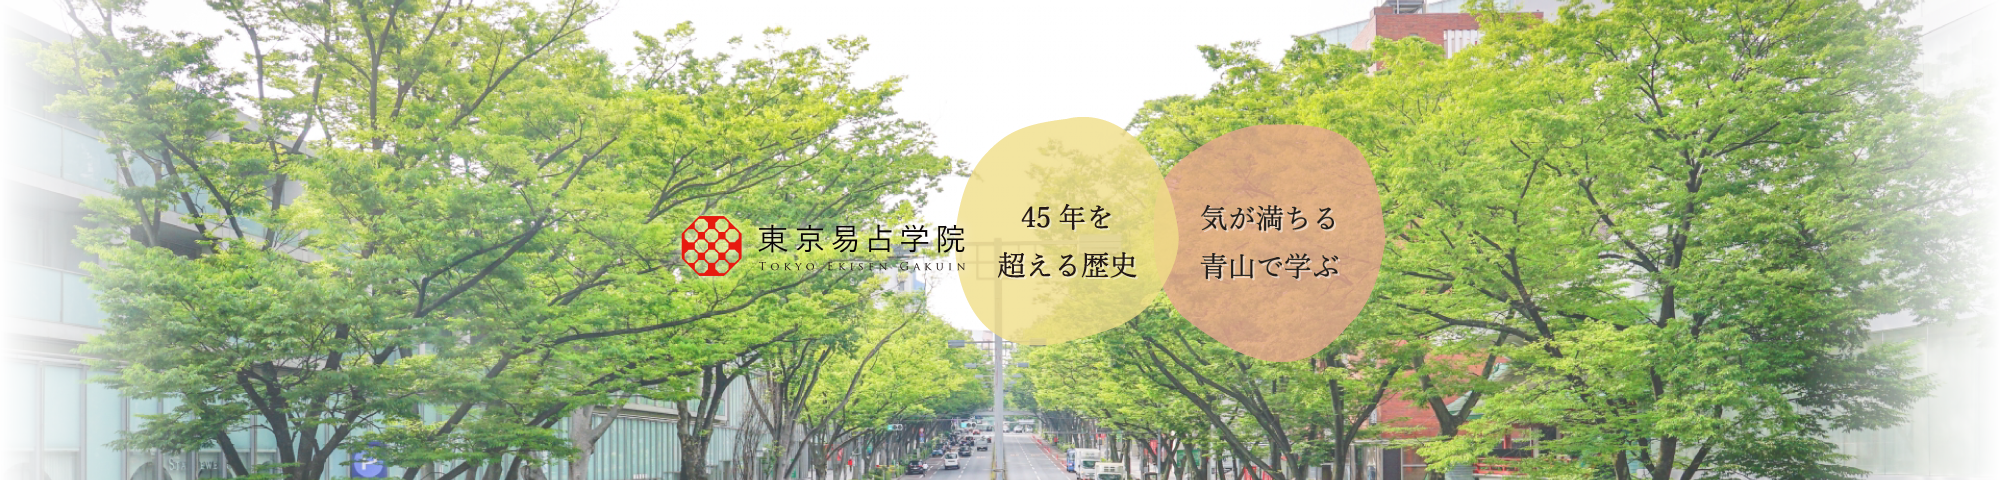 「東京易占学院は40年を超える歴史と気が満ちる青山で学べる占いの学校」スライド画像